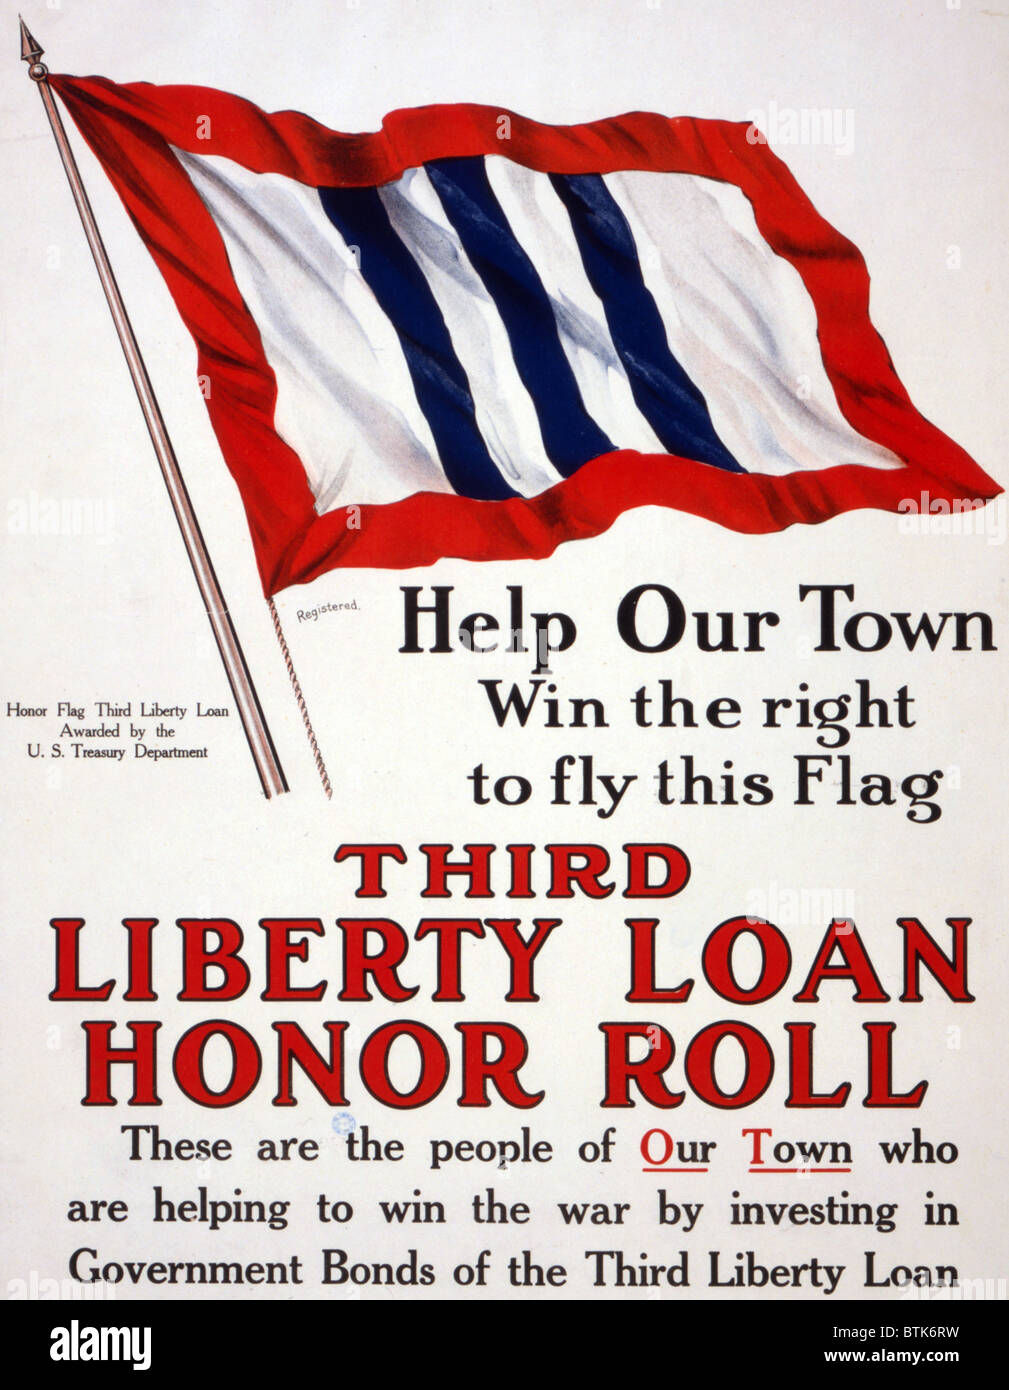 La Première Guerre mondiale, Affiche - aider notre ville gagne le droit de brandir ce drapeau - Troisième liberté d'honneur prêt - décerné par le Département du Trésor des États-Unis, 1917 Banque D'Images